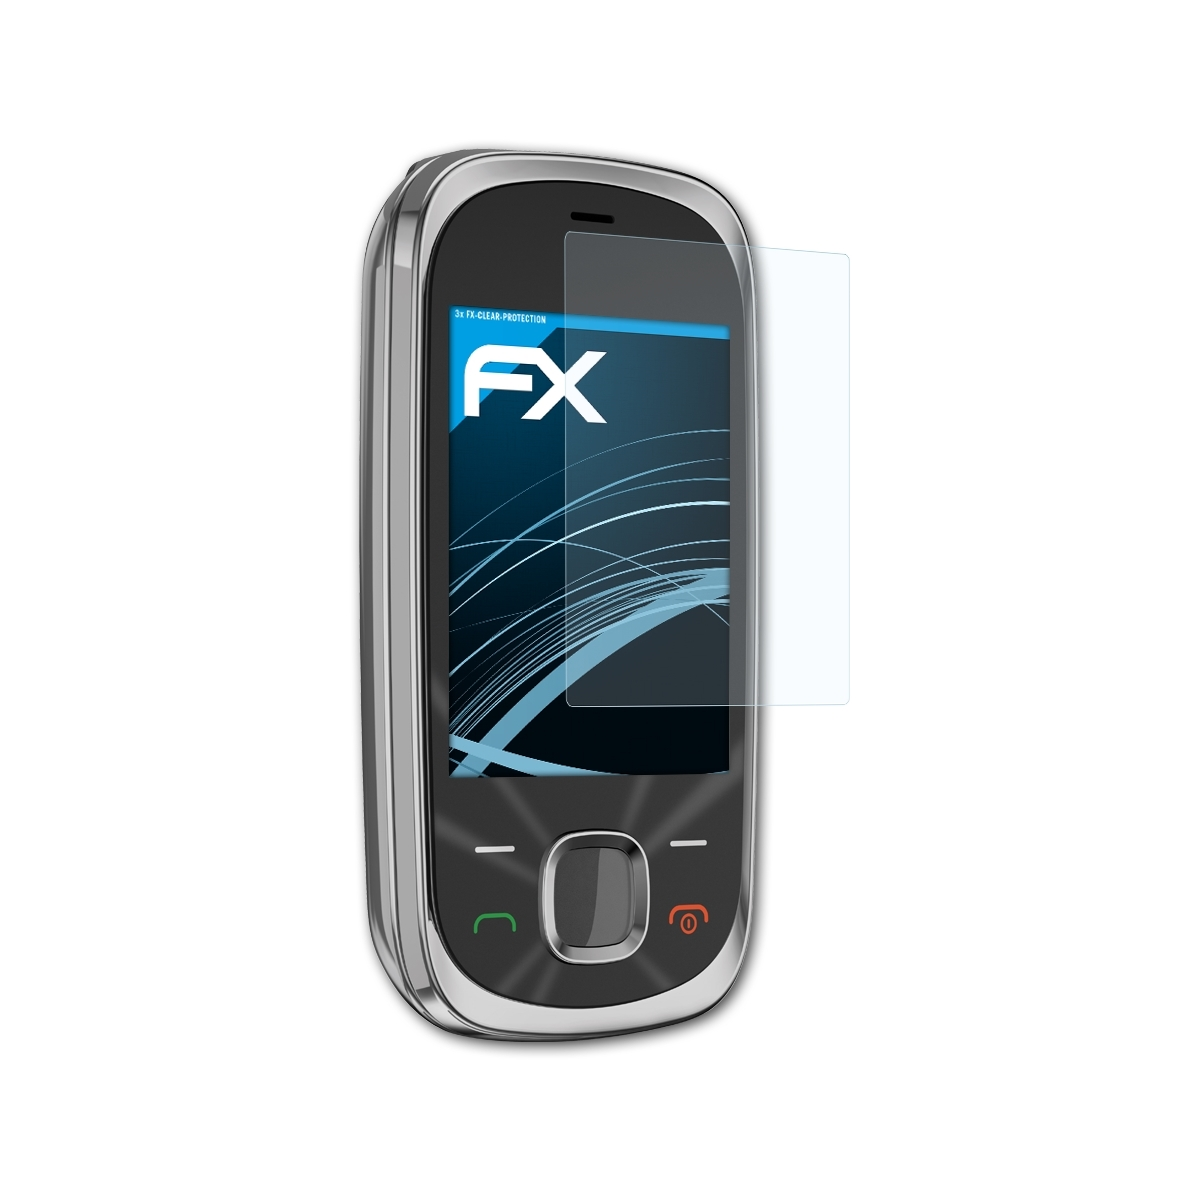 FX-Clear 7230) Displayschutz(für ATFOLIX Nokia 3x